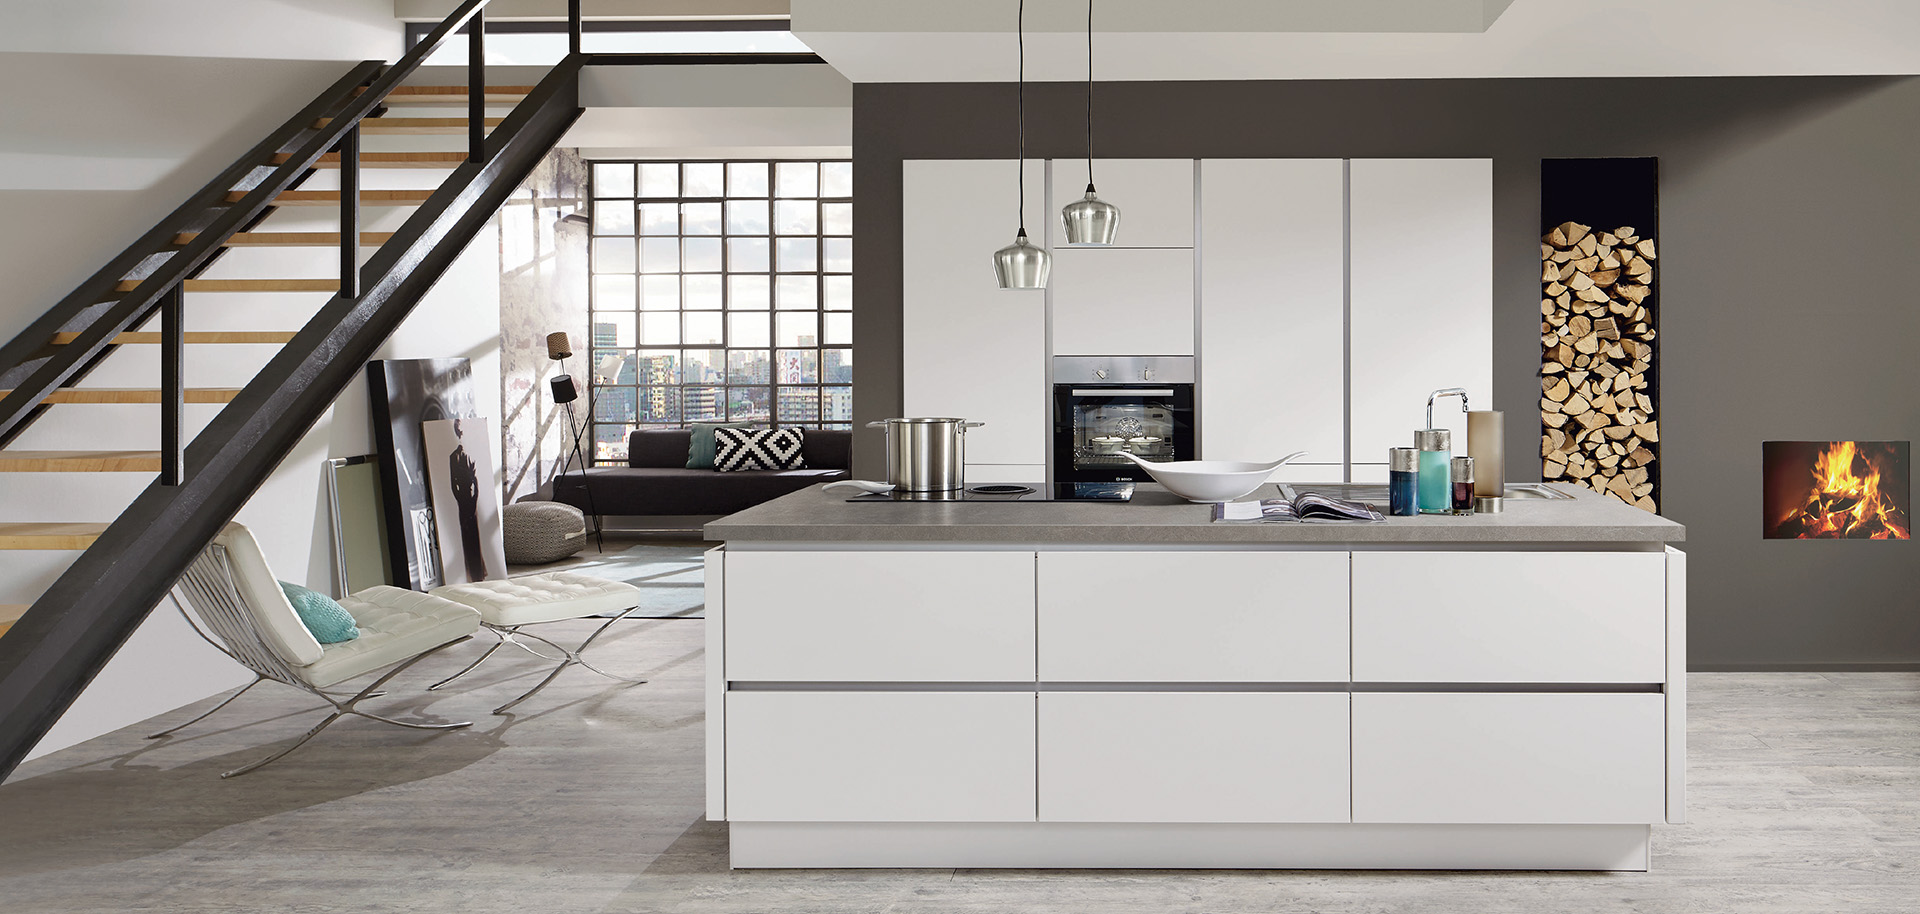 Moderne Kücheninnenräume mit klaren Linien, weißen Schränken, Edelstahlgeräten und einem angrenzenden gemütlichen Wohnbereich mit Kamin.